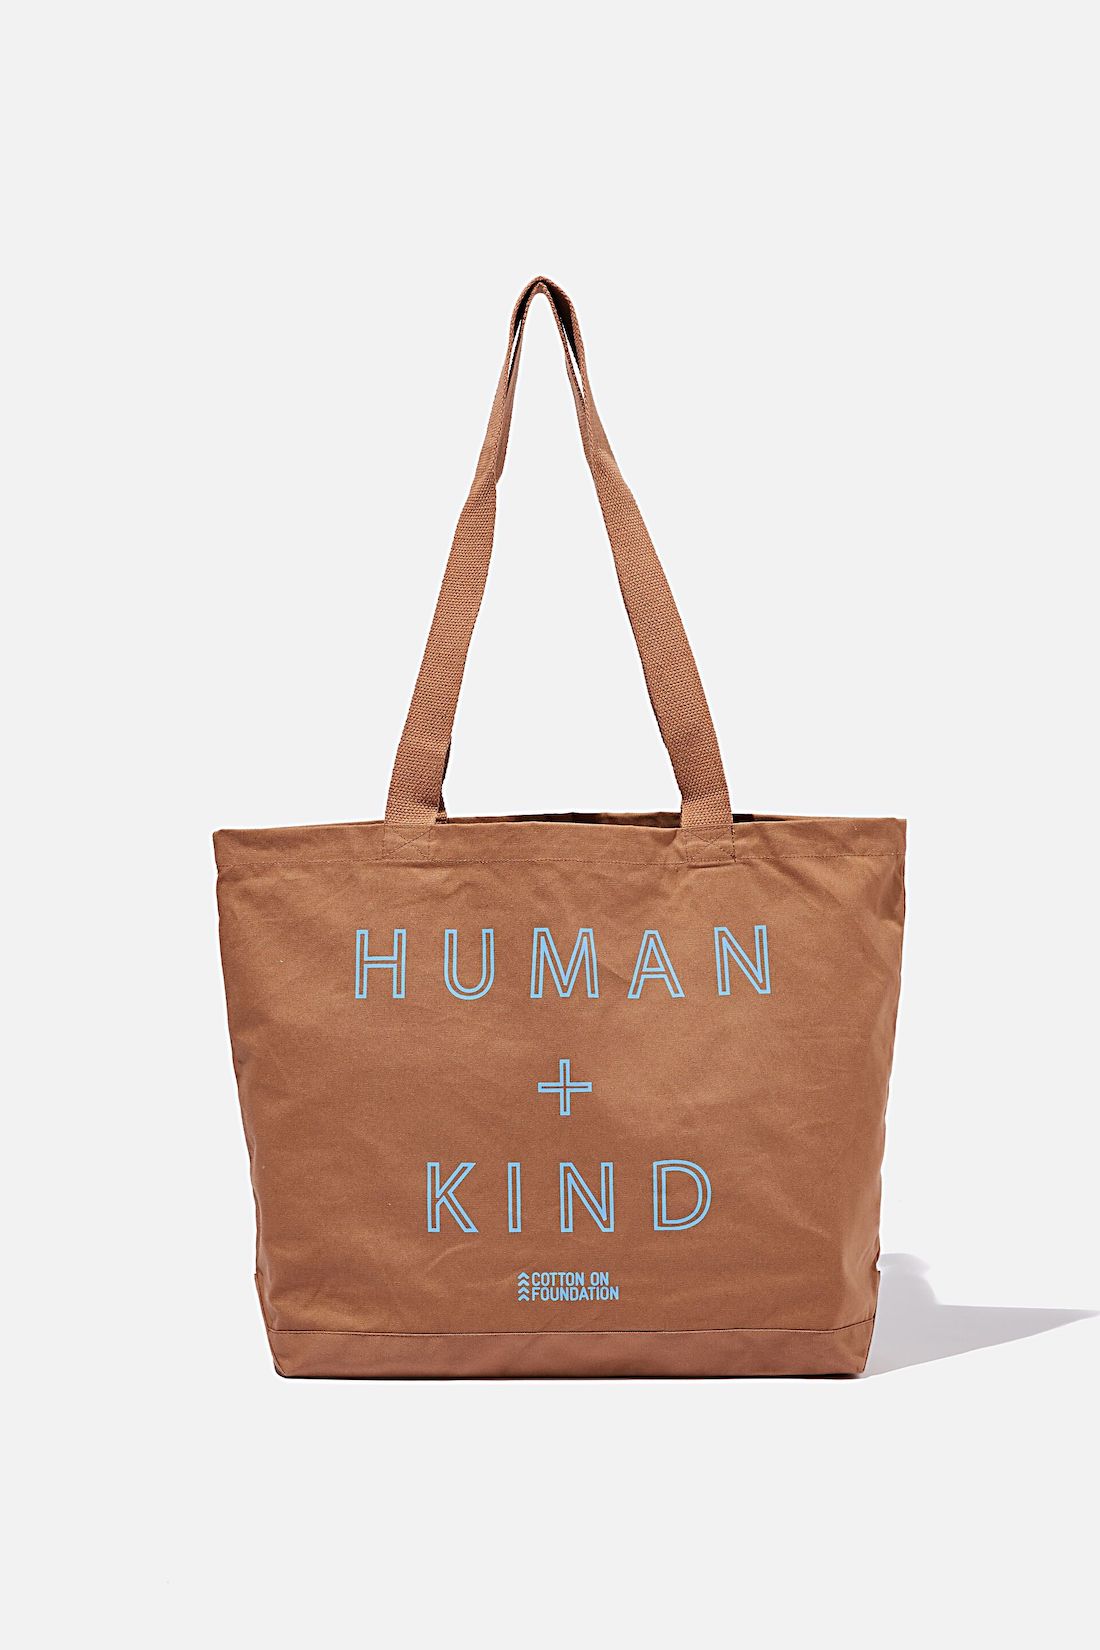 Human and Kind tote bag